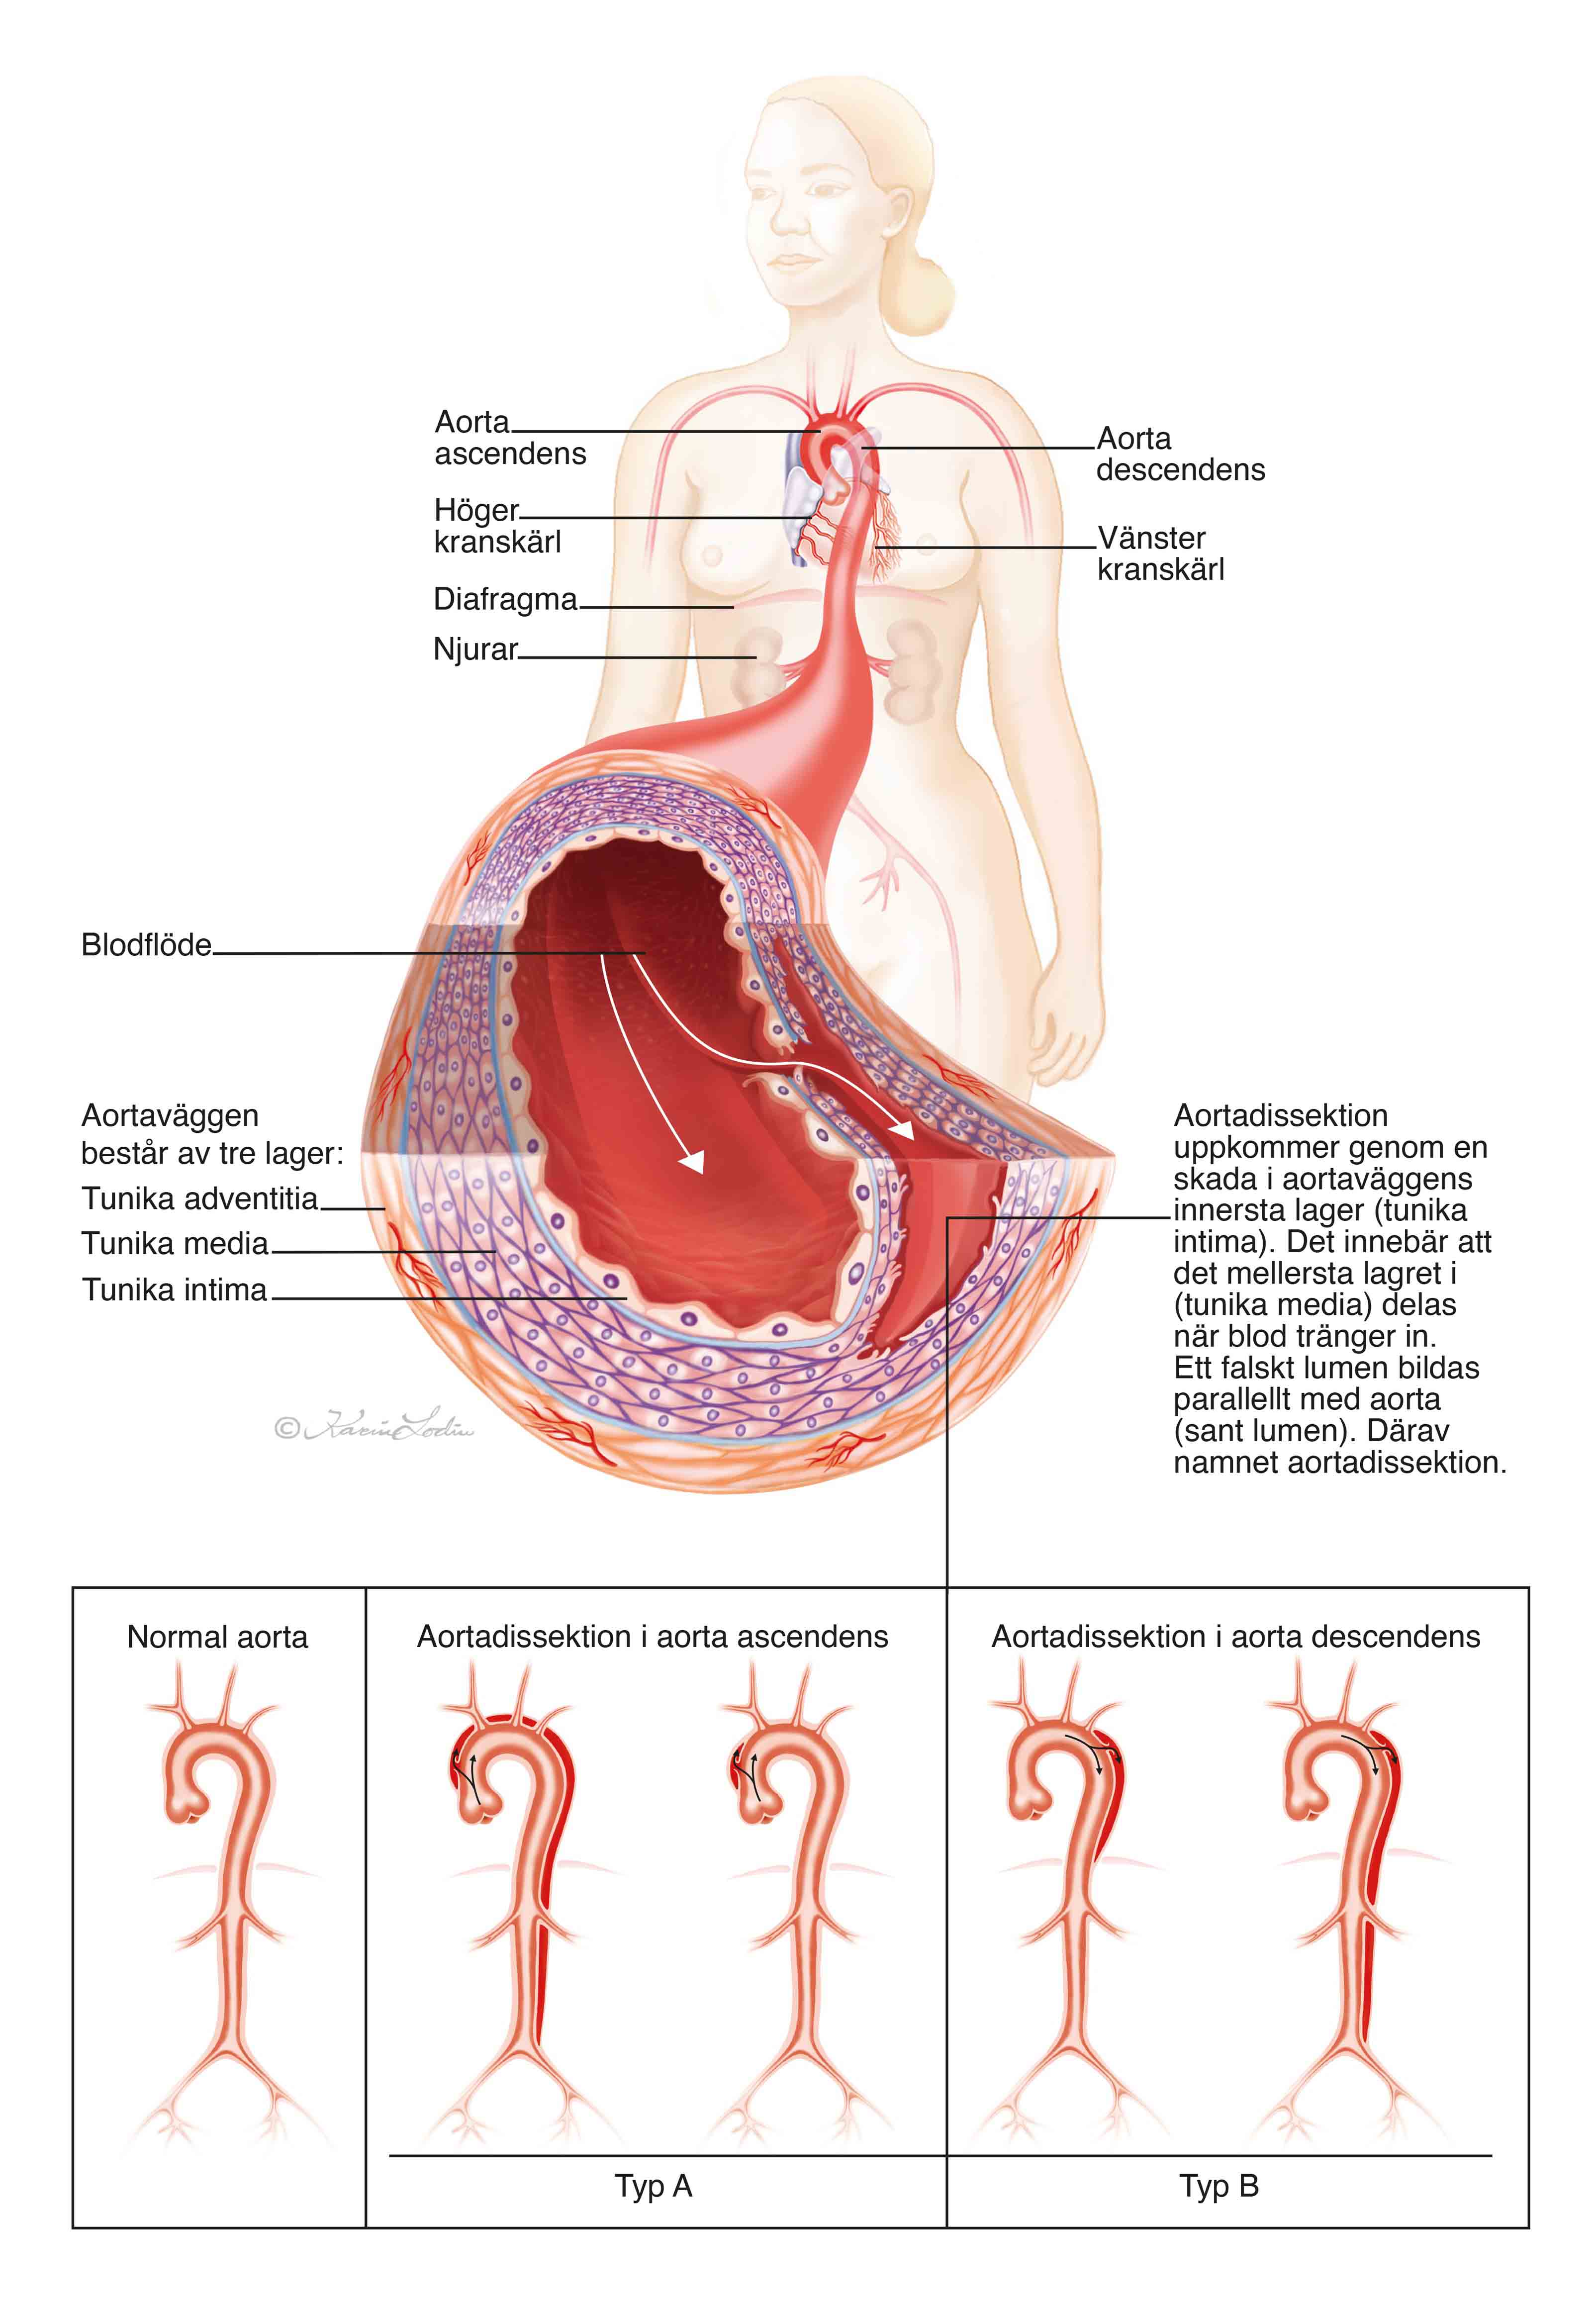 Illustration över vad som händer vid en aortadissektion